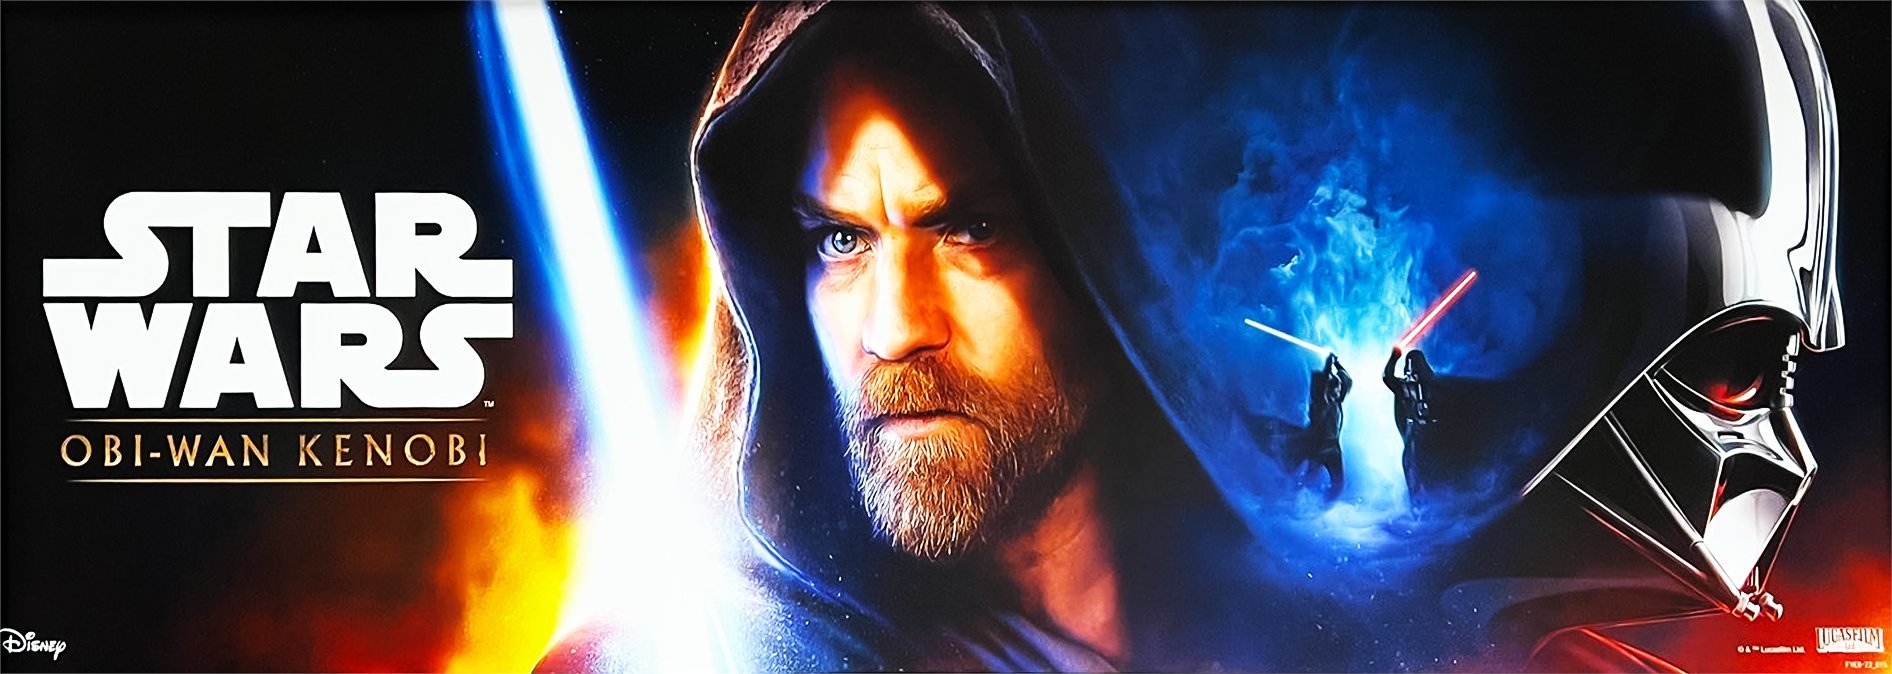 Obi-Wan Kenobi: Publican el cartel promocional de la pelea contra Darth  Vader | Marca